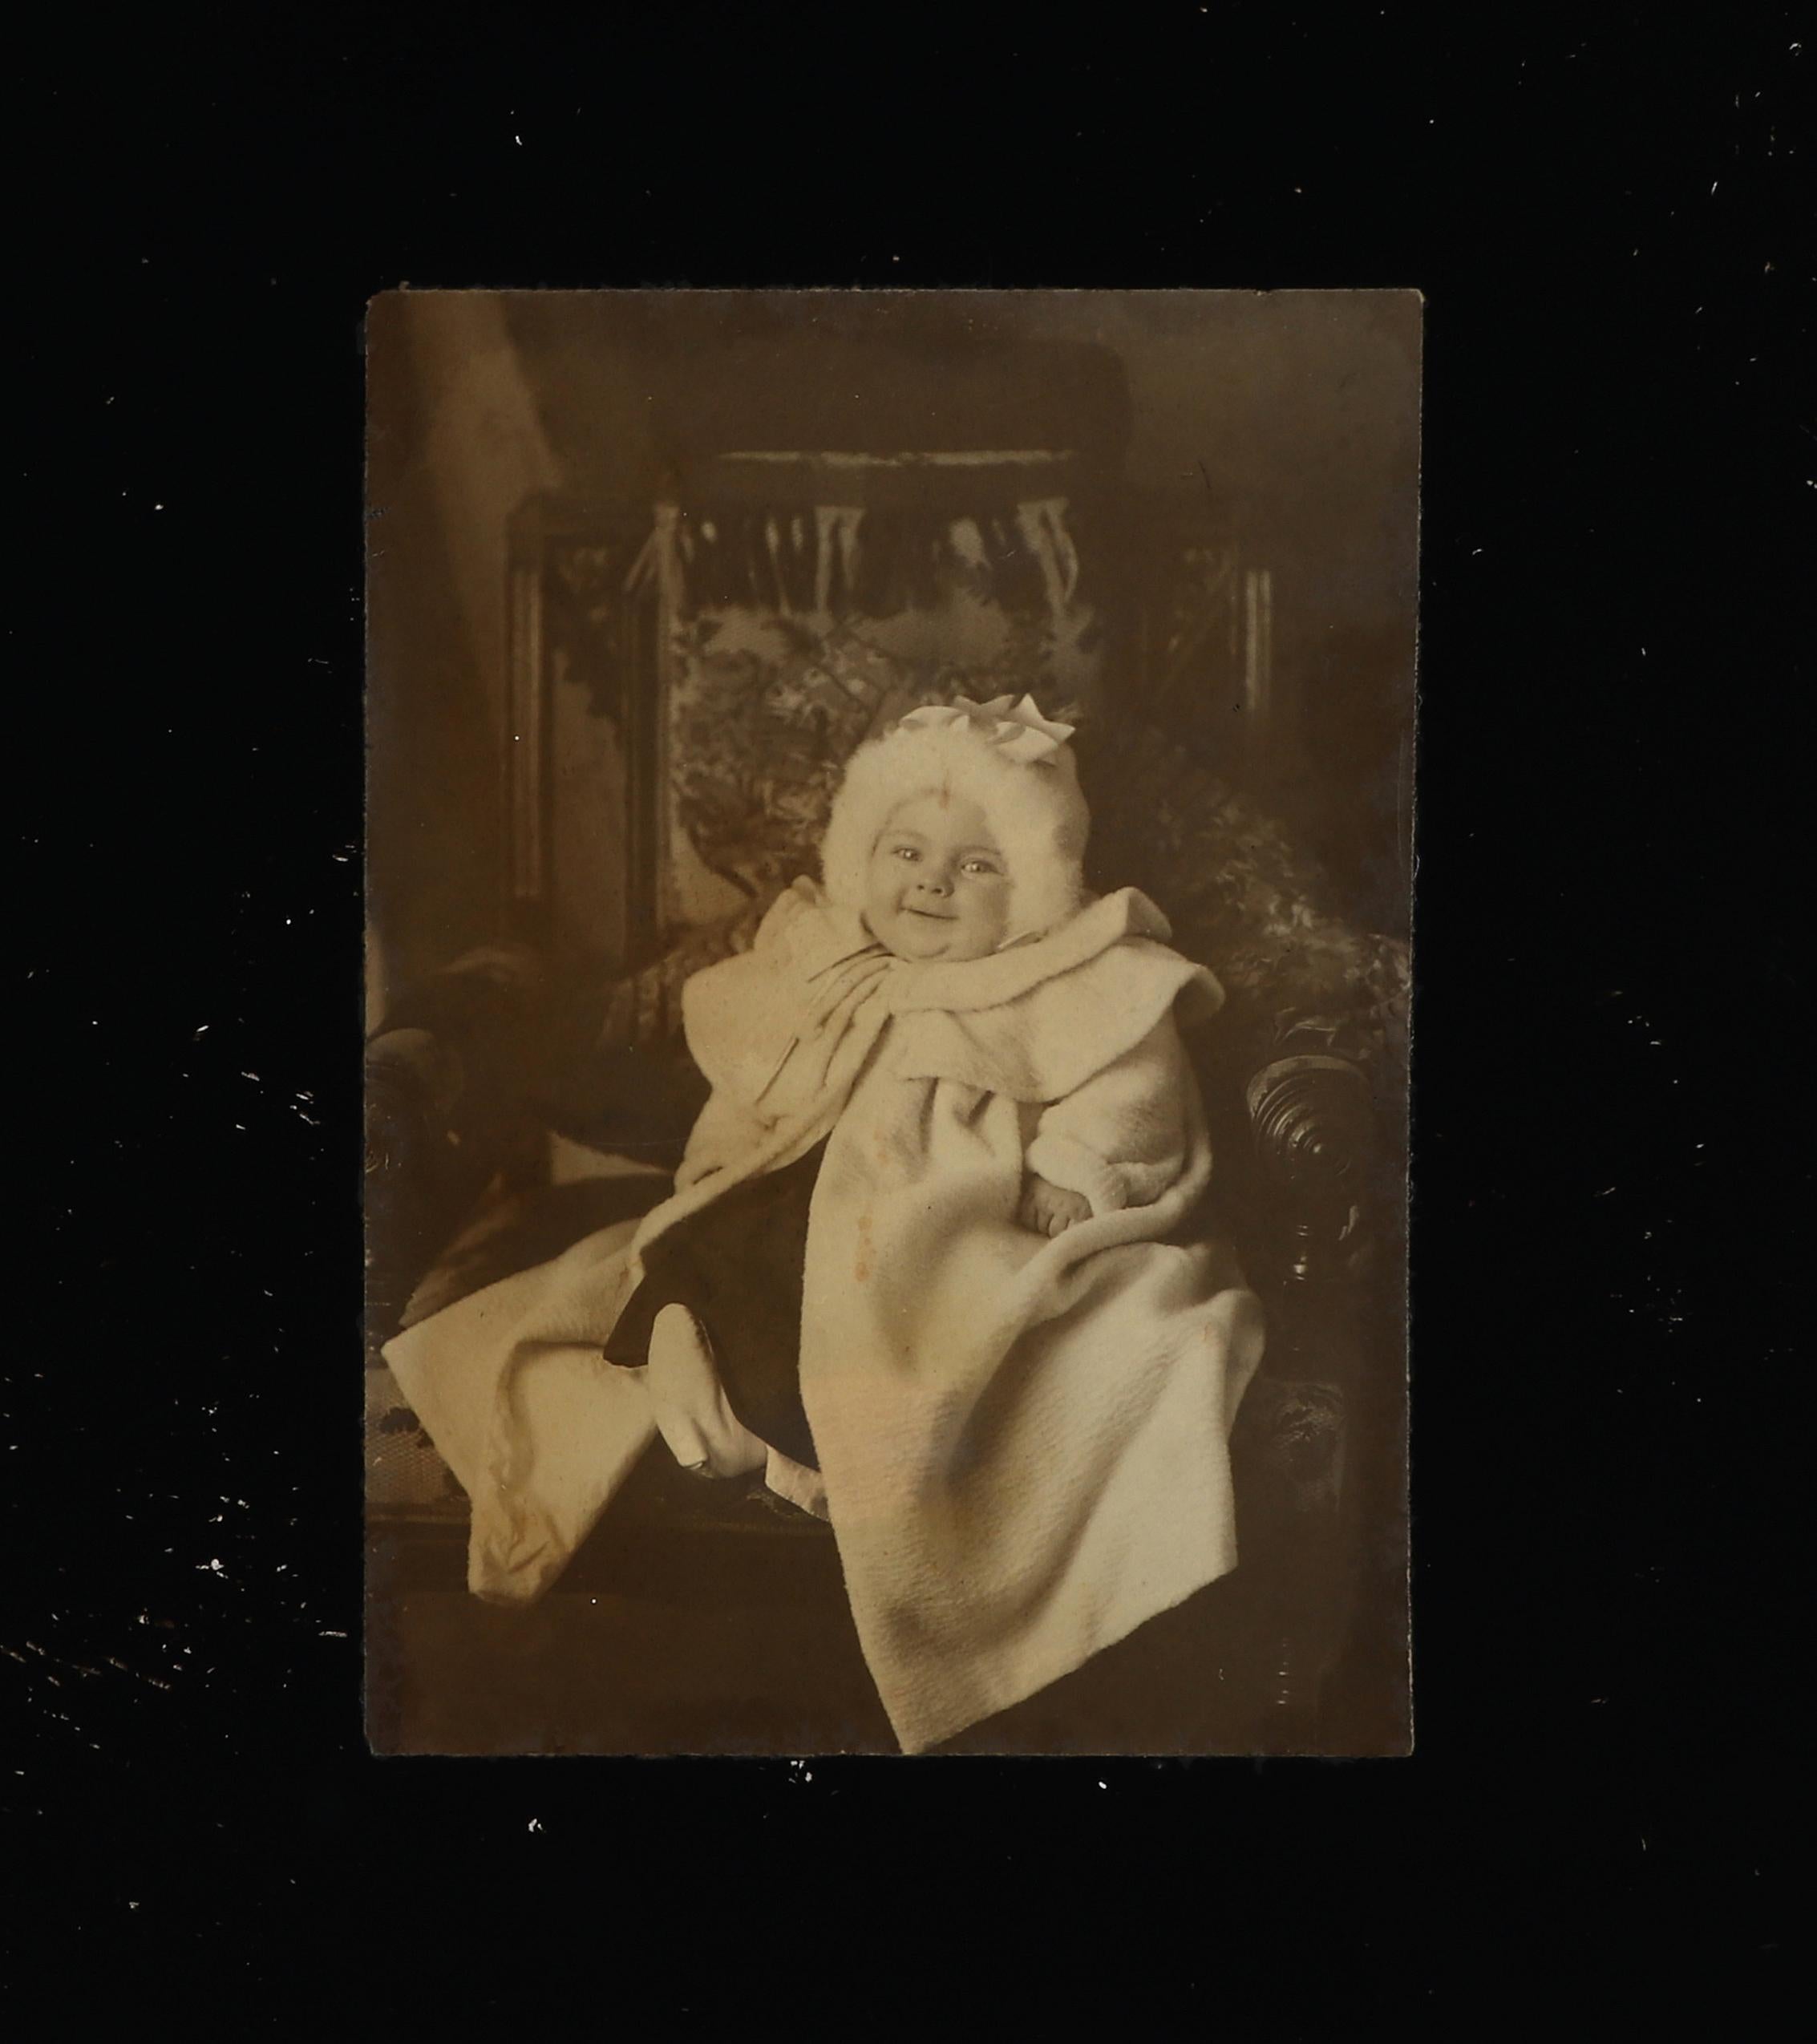 Exemple rare et original d'un des premiers procédés photographiques, l'Ambrotype. Vers la fin des années 1850 ou le début des années 1860. Un ambrotype est constitué d'un négatif en verre sous-exposé placé sur un fond sombre. Le support sombre crée